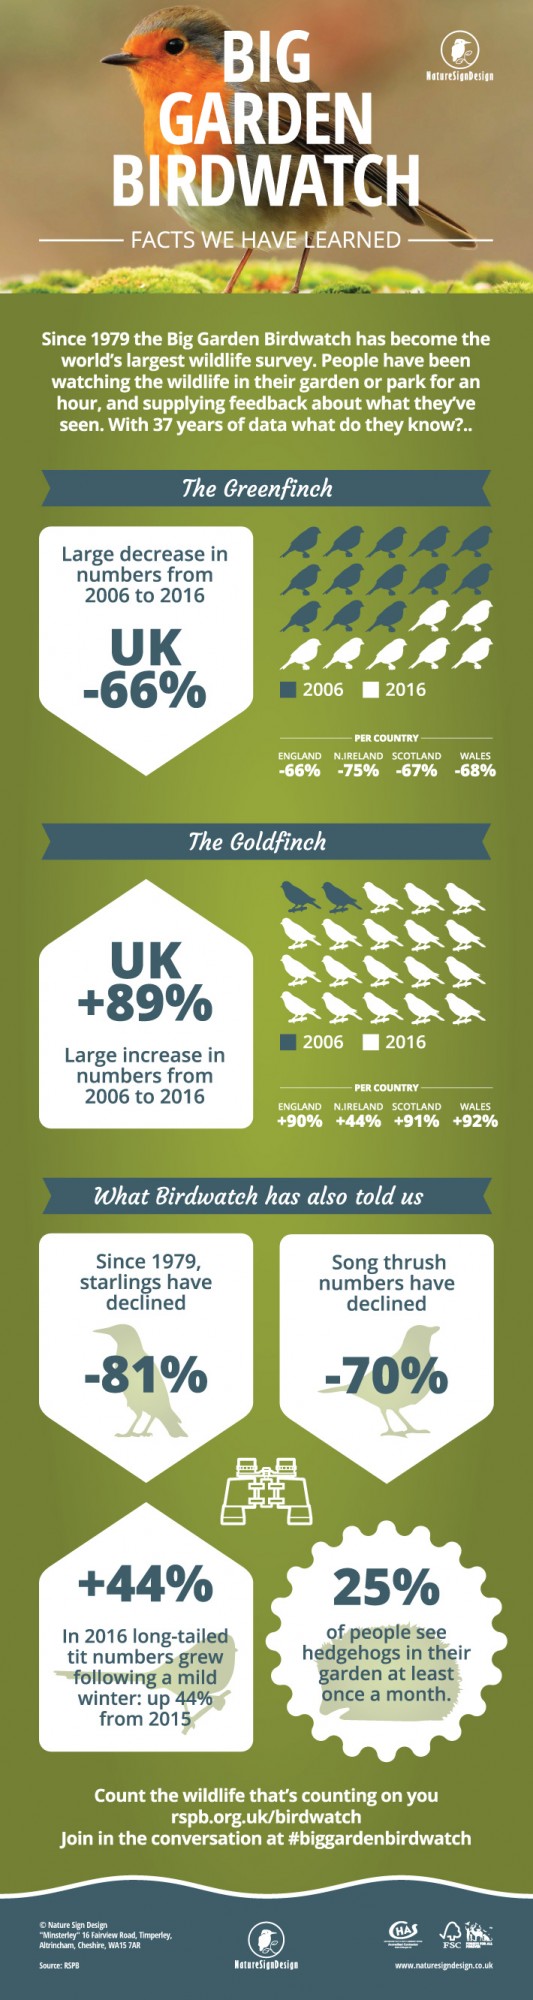 big garden birdwatch infographic